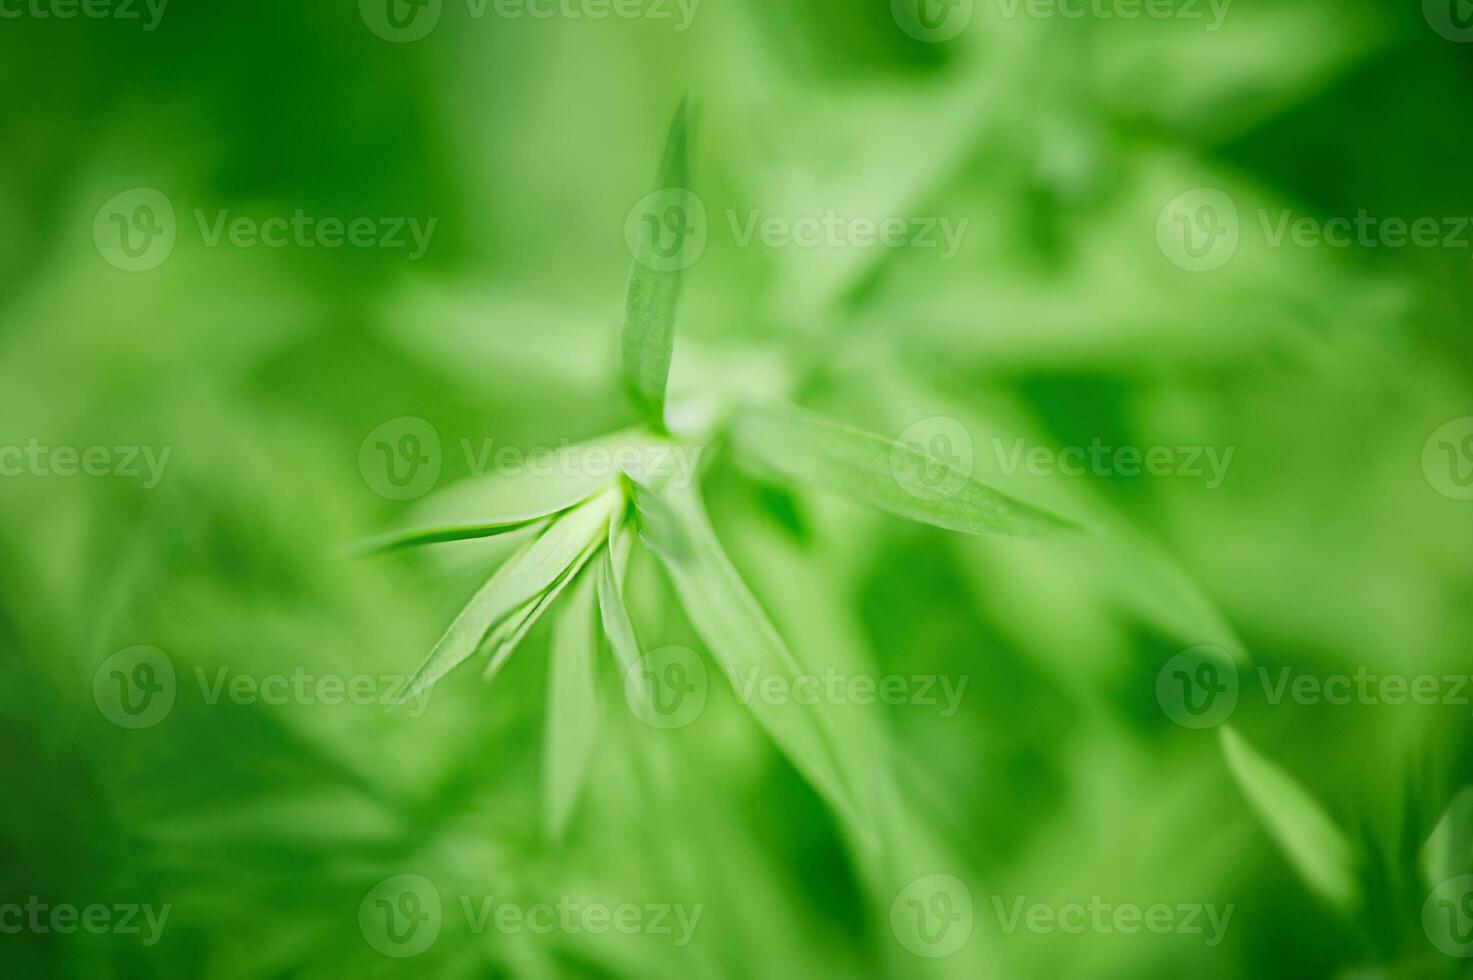 grön löv tunn fokal- zon och suddig bakgrund. makro Foto av en ung lin växt.